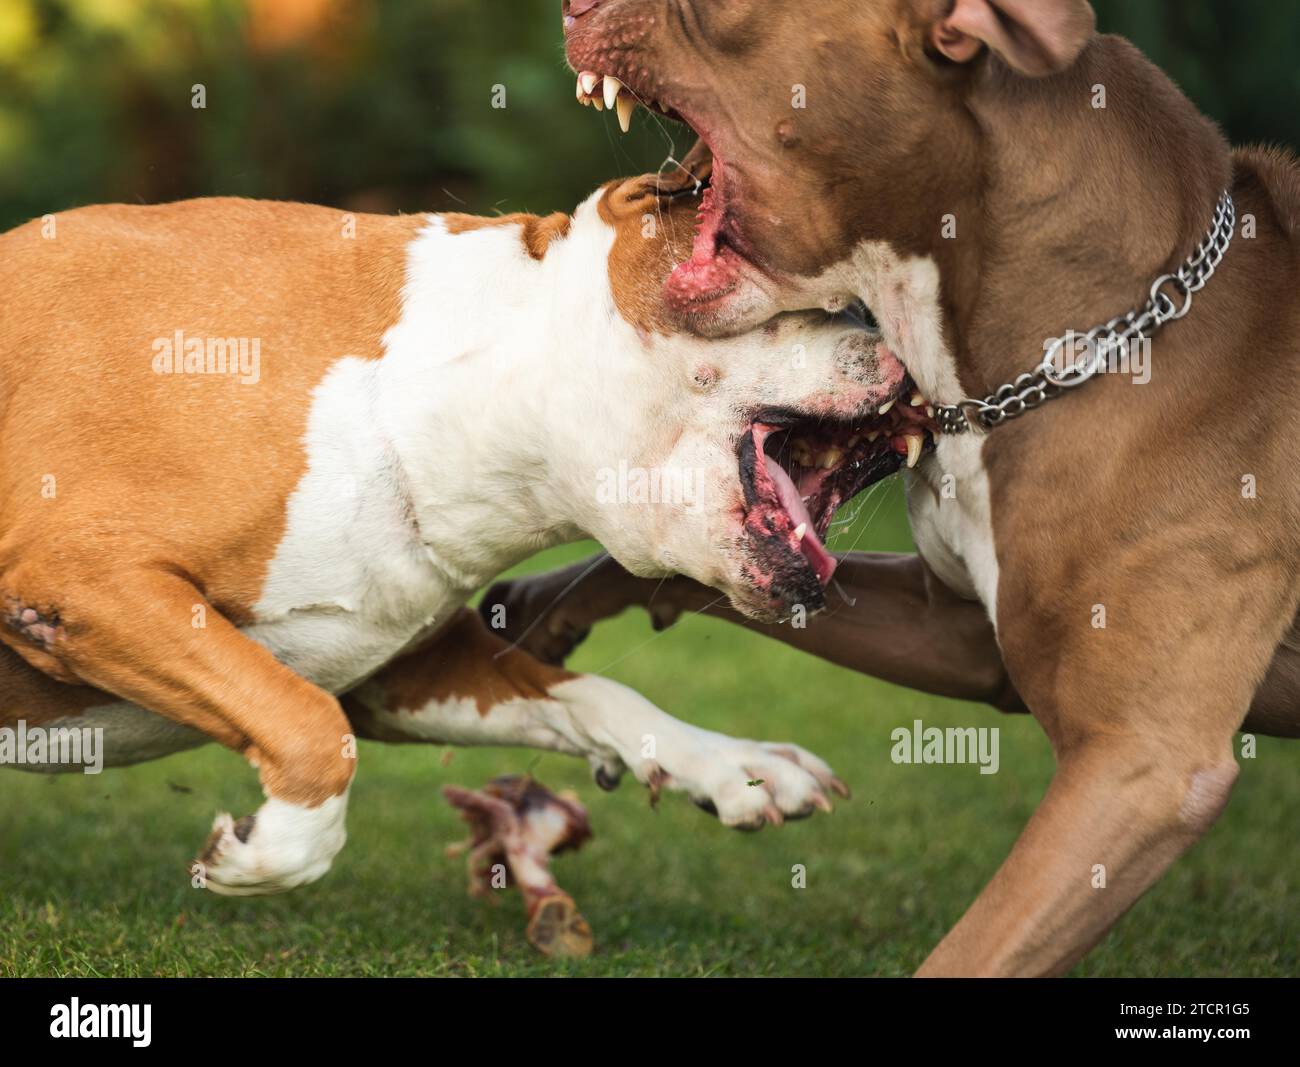 Zwei Hunde amstaff Terrier kämpfen um Nahrung. Jung und alt Hund agressives Verhalten. Hunde-Thema Stockfoto